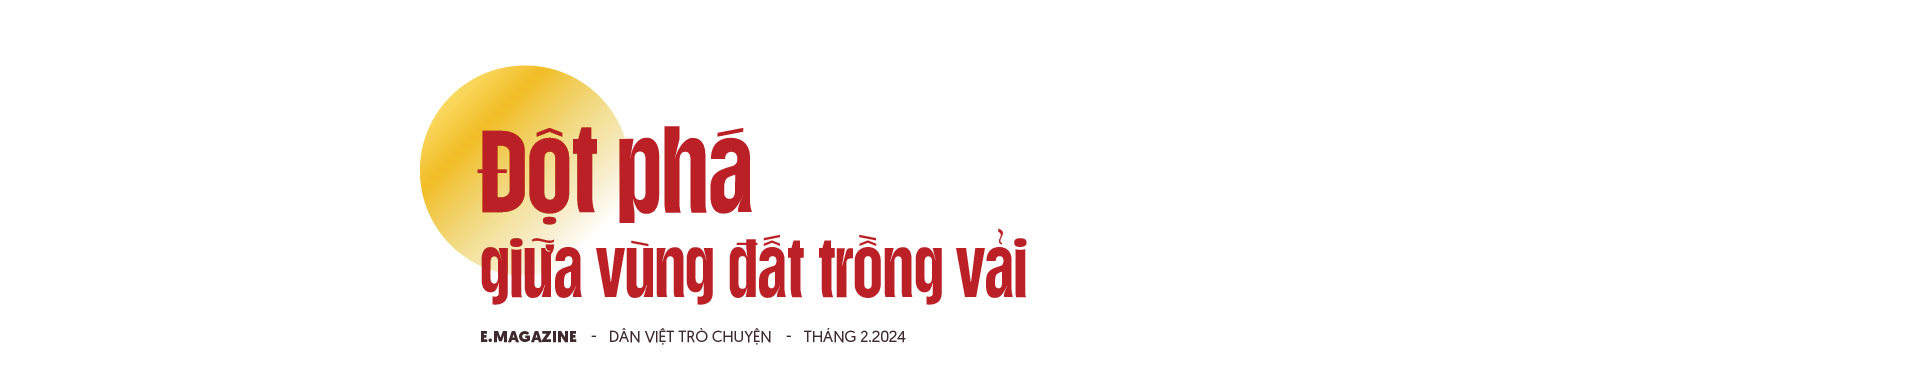 Nông dân Việt Nam xuất sắc Nguyễn Văn Hữu: "Cãi" cả họ phá vải thiều trồng bưởi và khu vườn hạnh phúc- Ảnh 1.